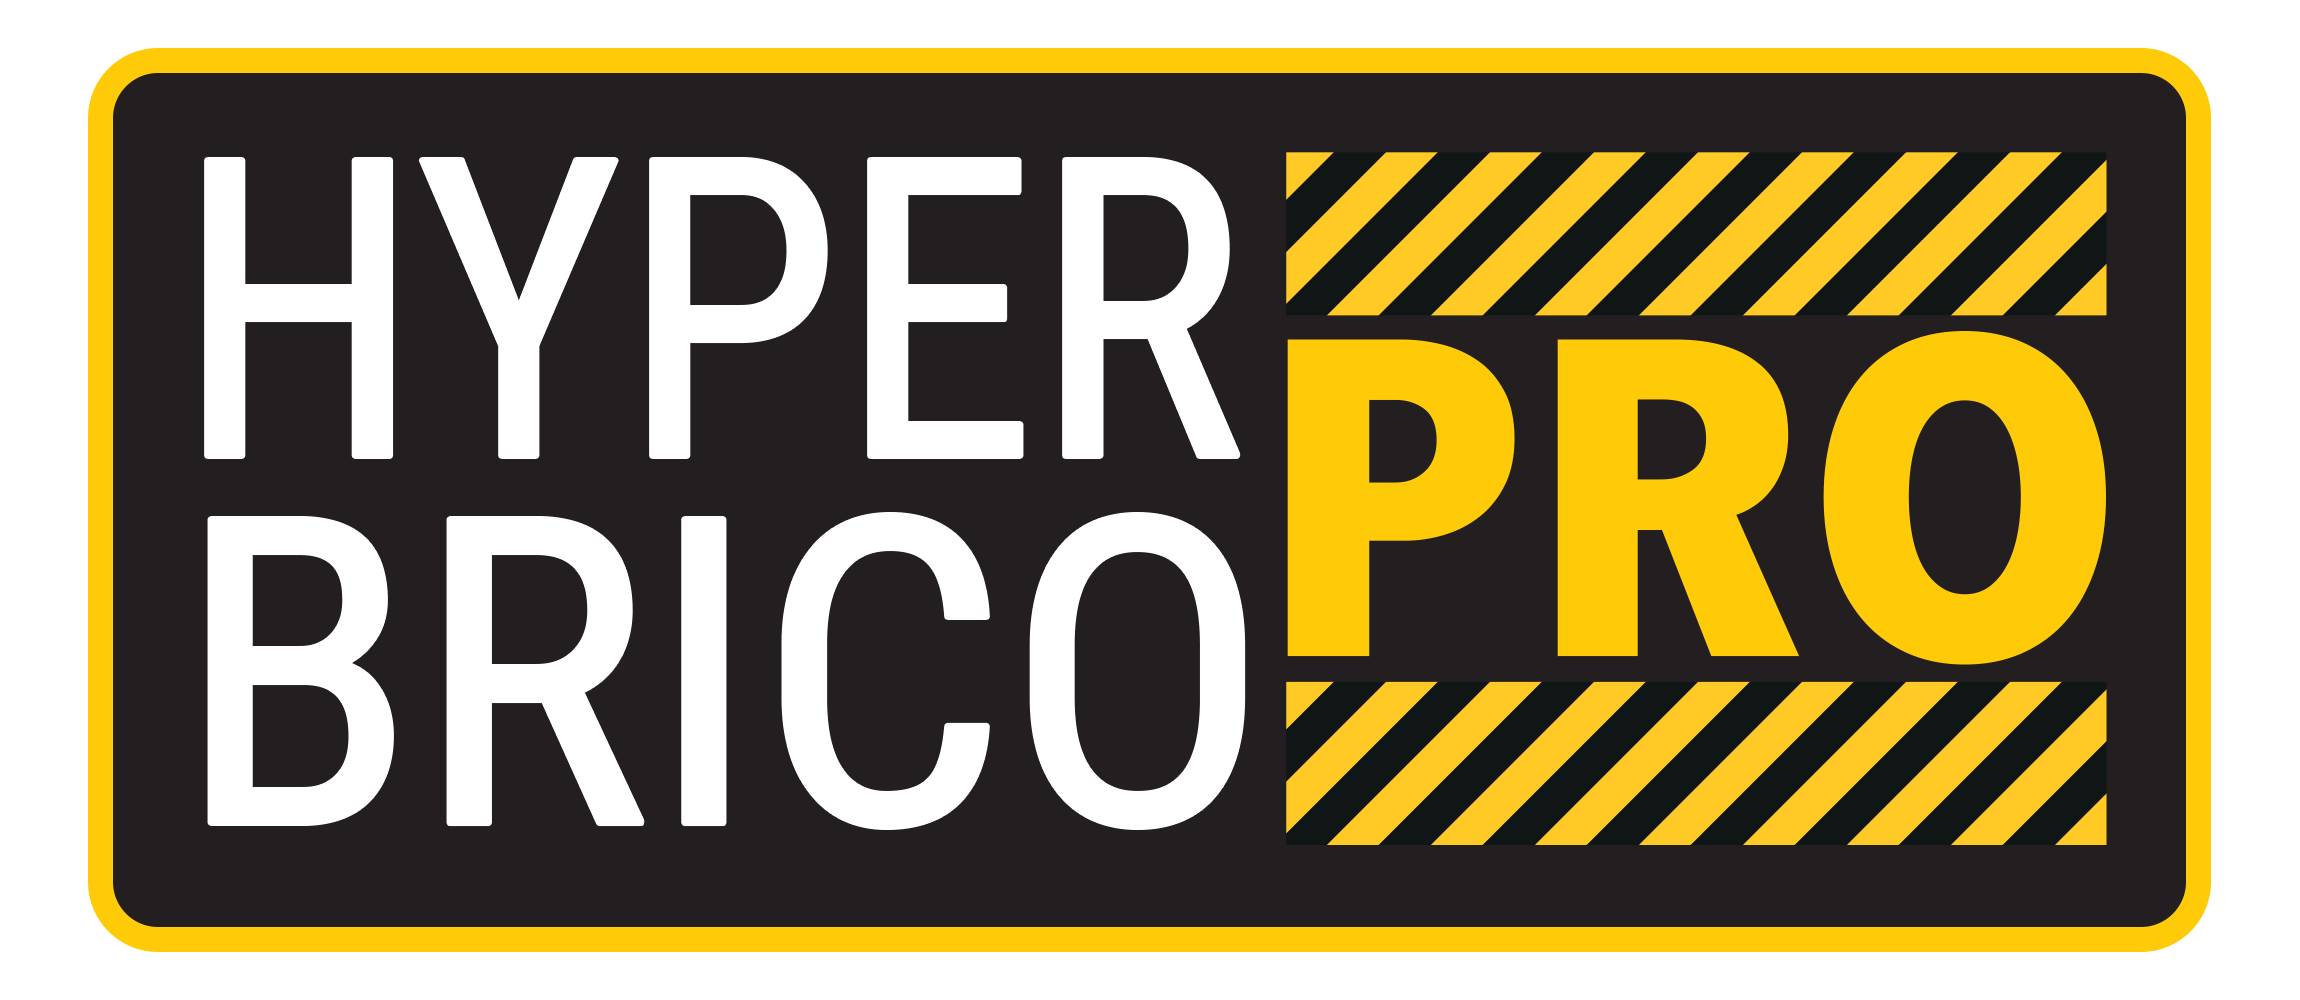 Hyper Brico Pro